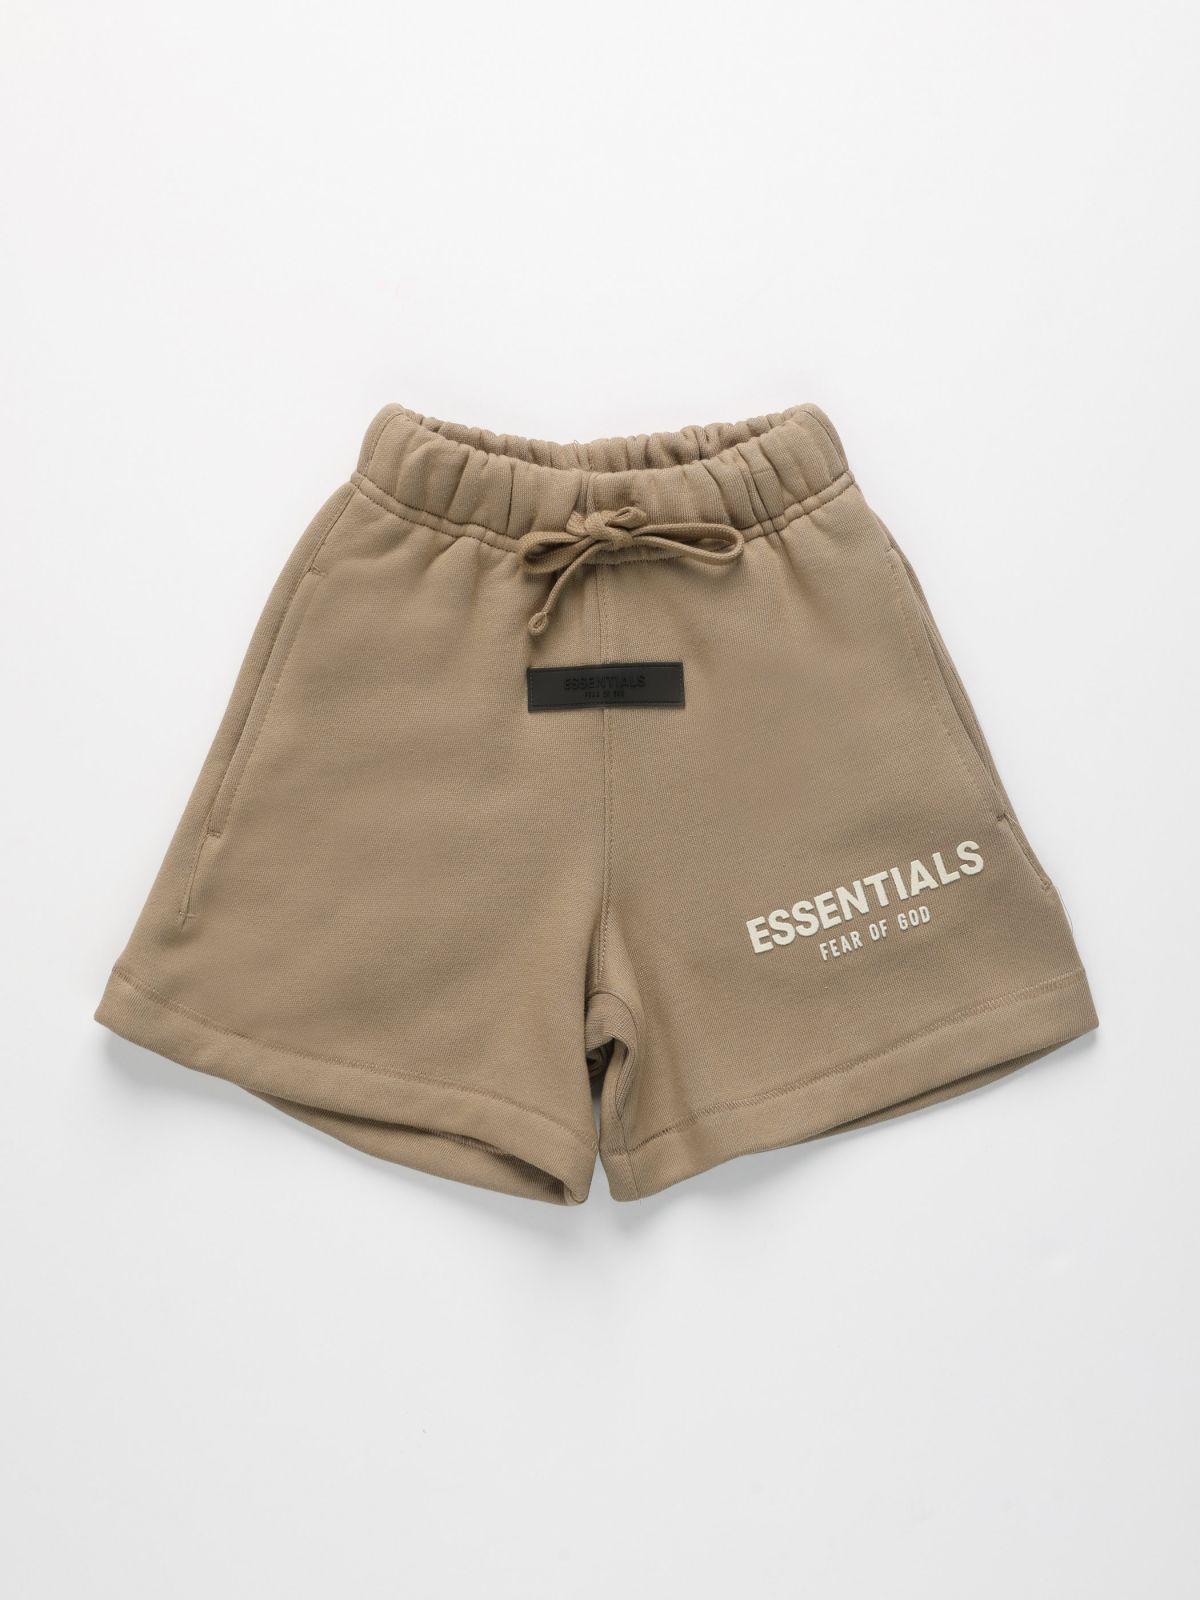  מכנסי טרנינג קצרים עם תבליט לוגו / בנים של ESSENTIALS